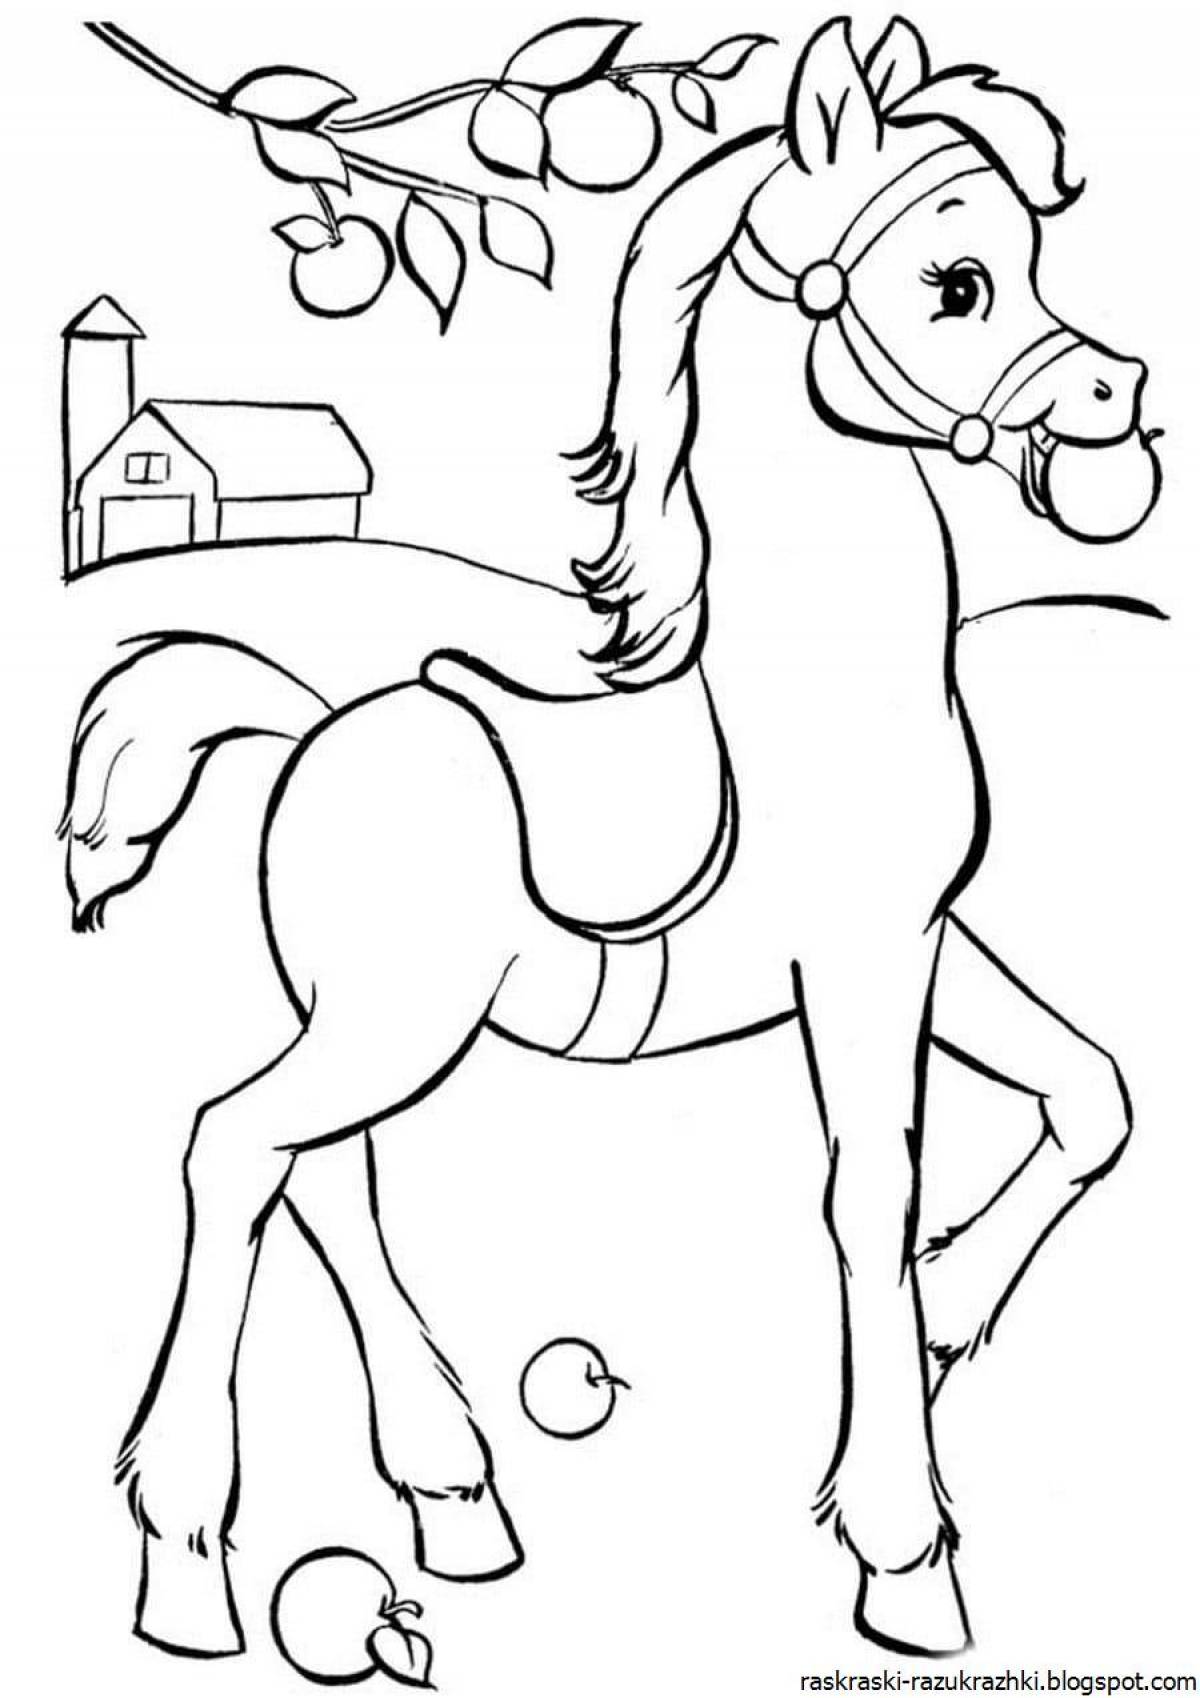 Игривая каштановая раскраска лошадь для детей